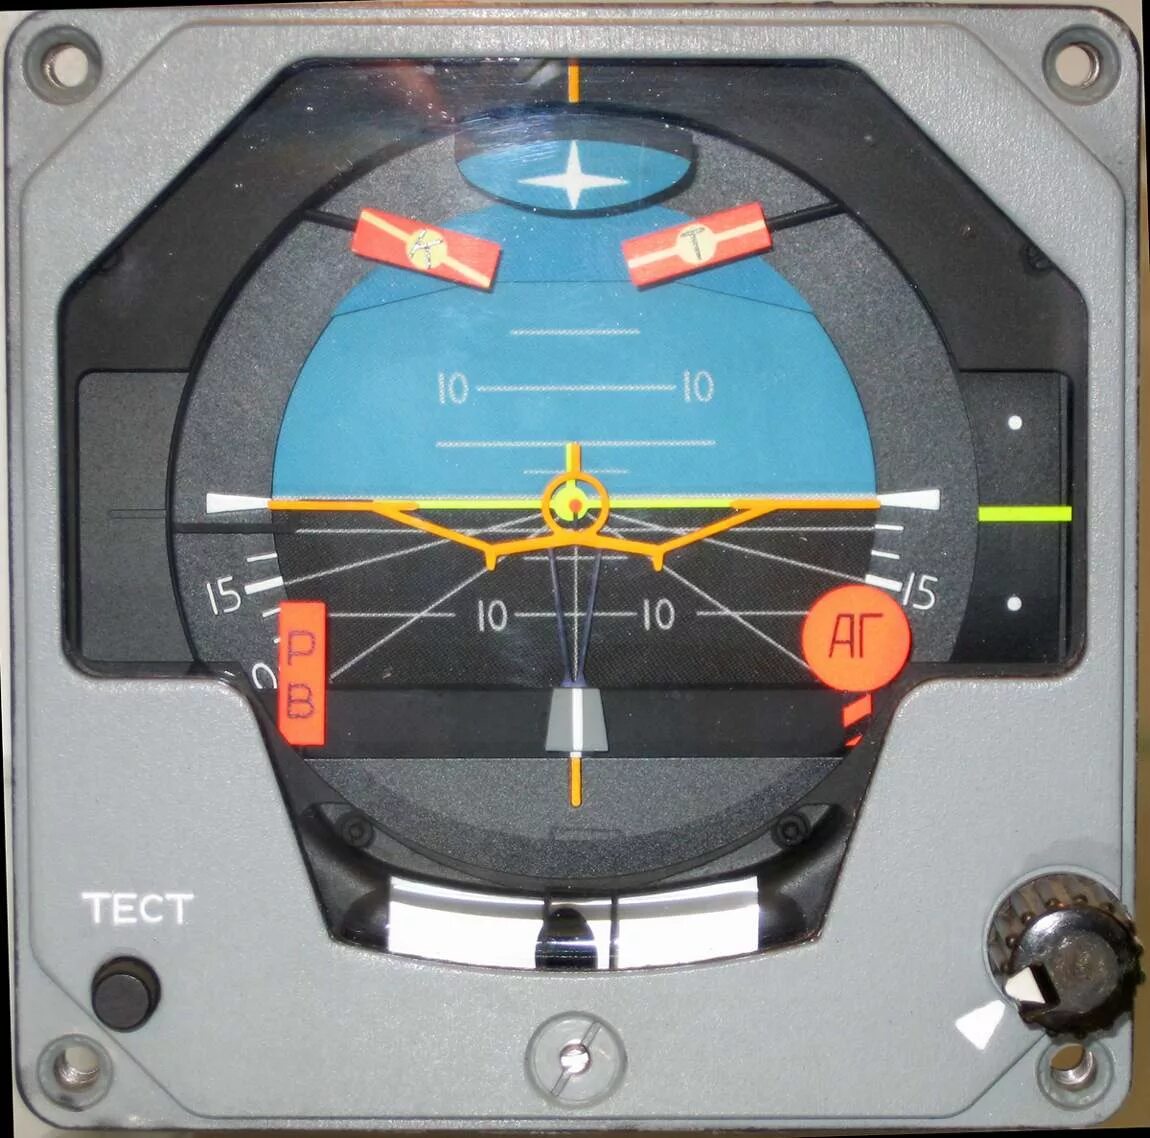 Гироскоп вр. Прибор командный пилотажный ПКП-77м. ПКП-77 авиагоризонт. ПКП-72 прибор командно-пилотажный. ПКП авиагоризонт ми24.